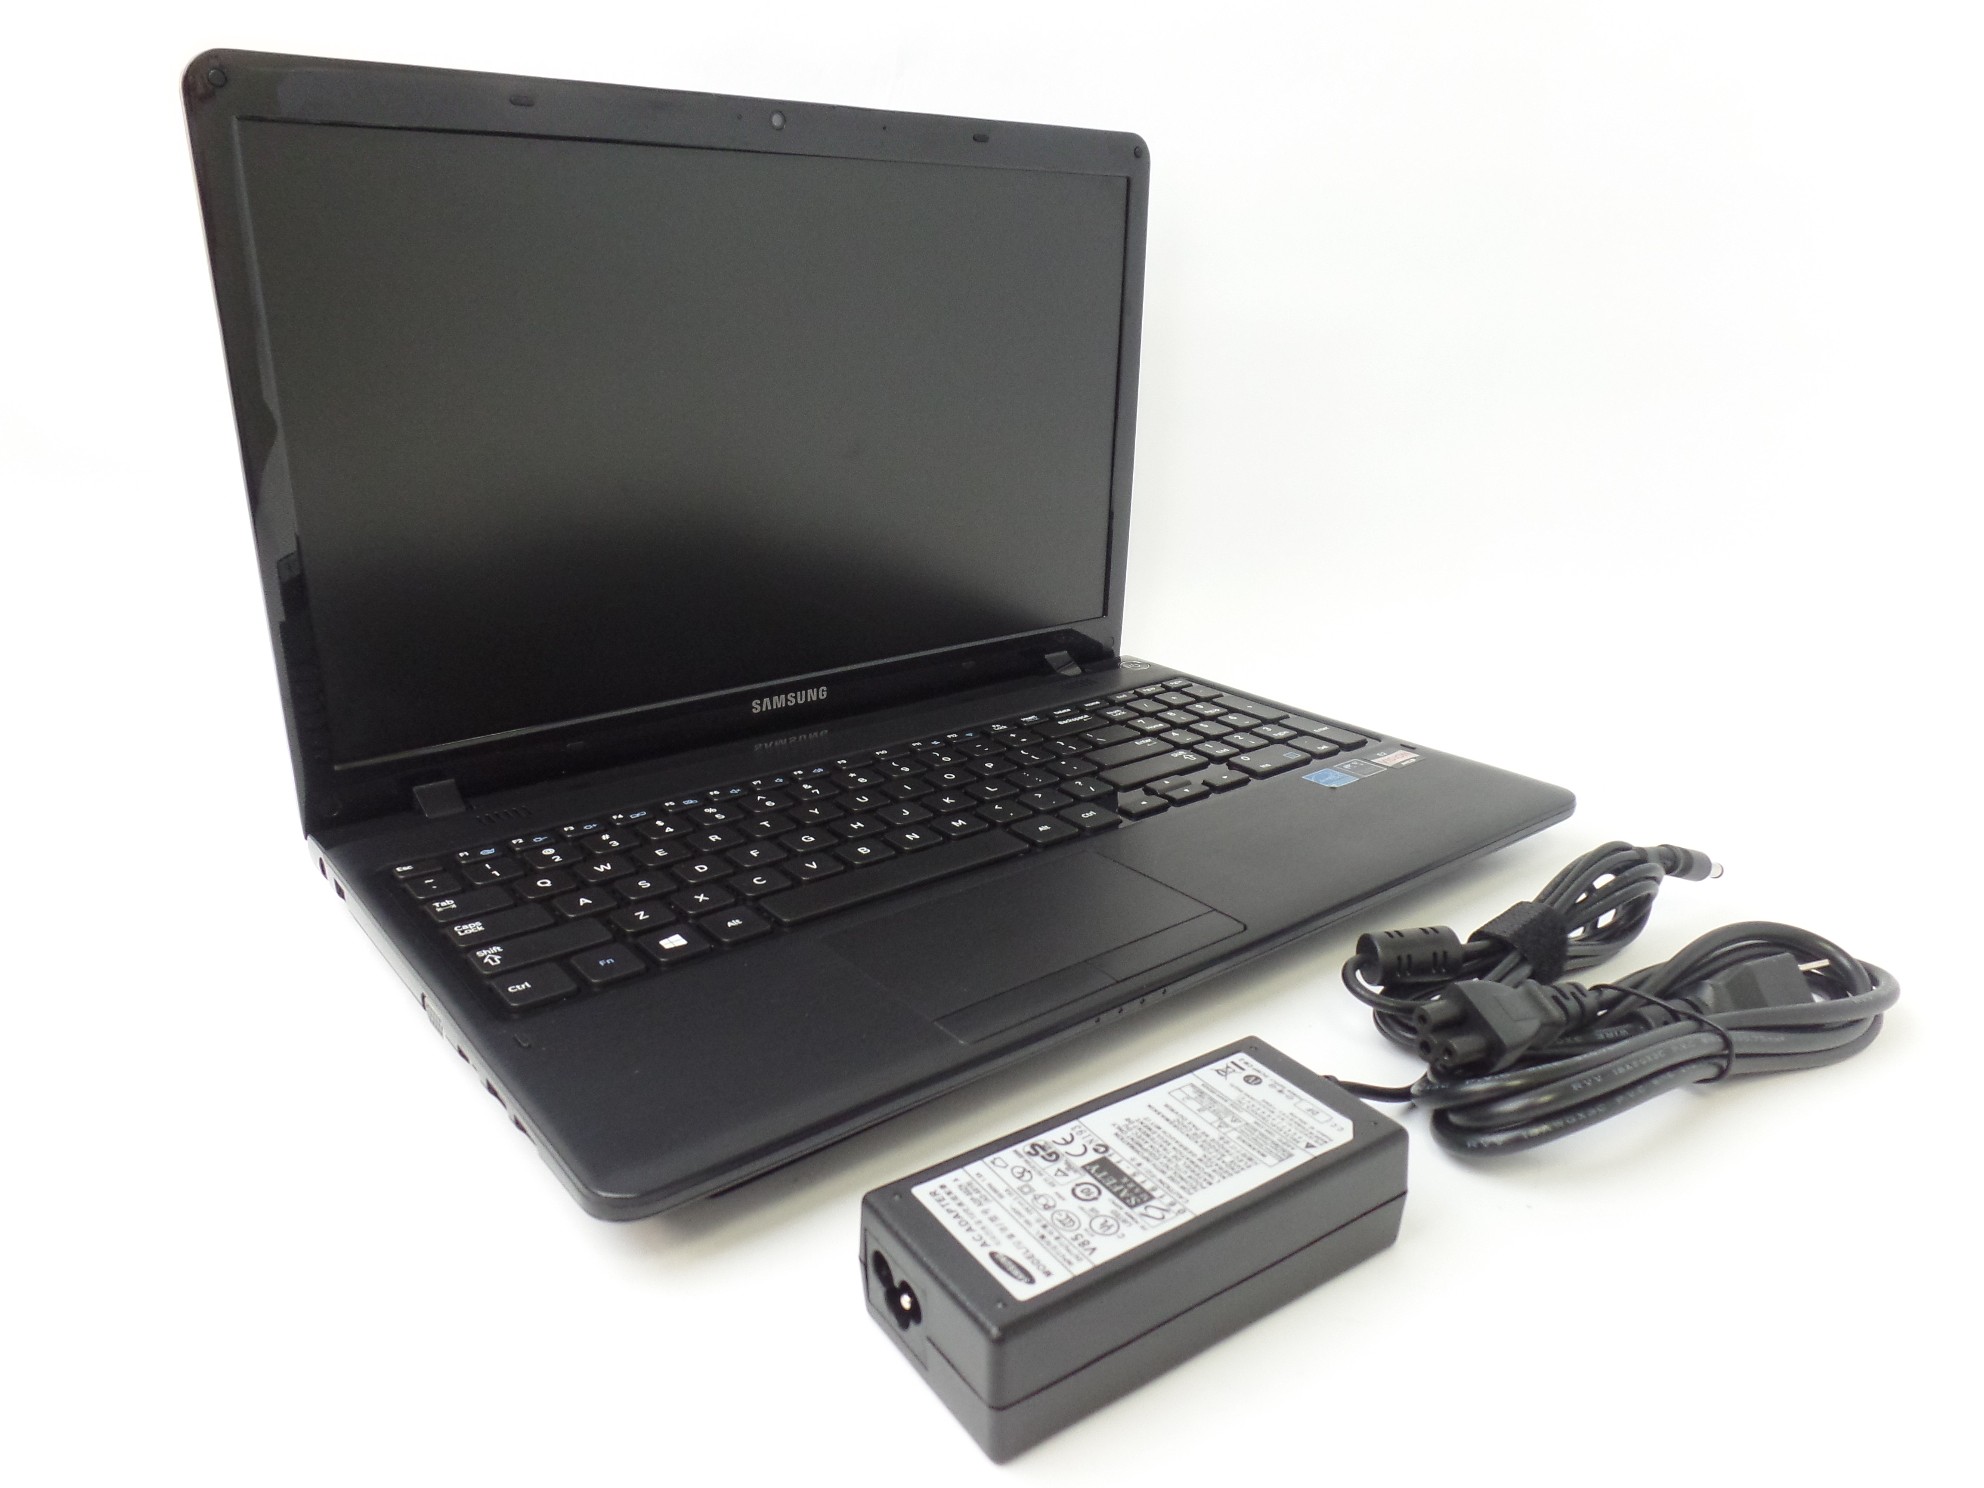 Samsung NP355E5C-A01US 15.6" HD AMD E2-1800 1.7GHz 4GB 500GB HDD W10H Laptop U